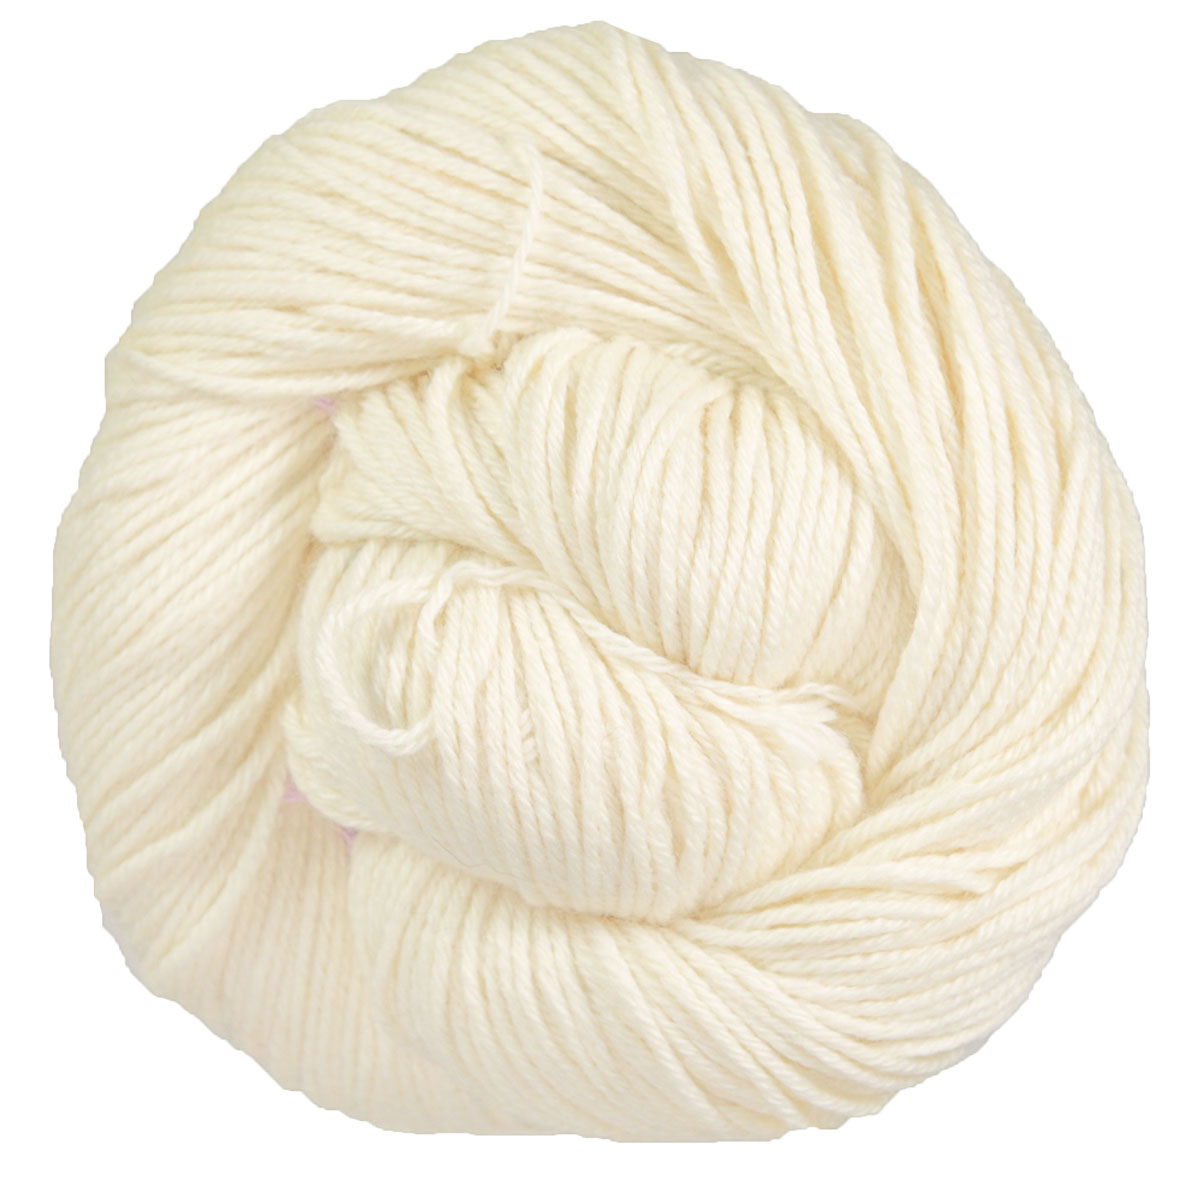 Madelinetosh Wool + Cotton Yarn at Jimmy Beans Wool